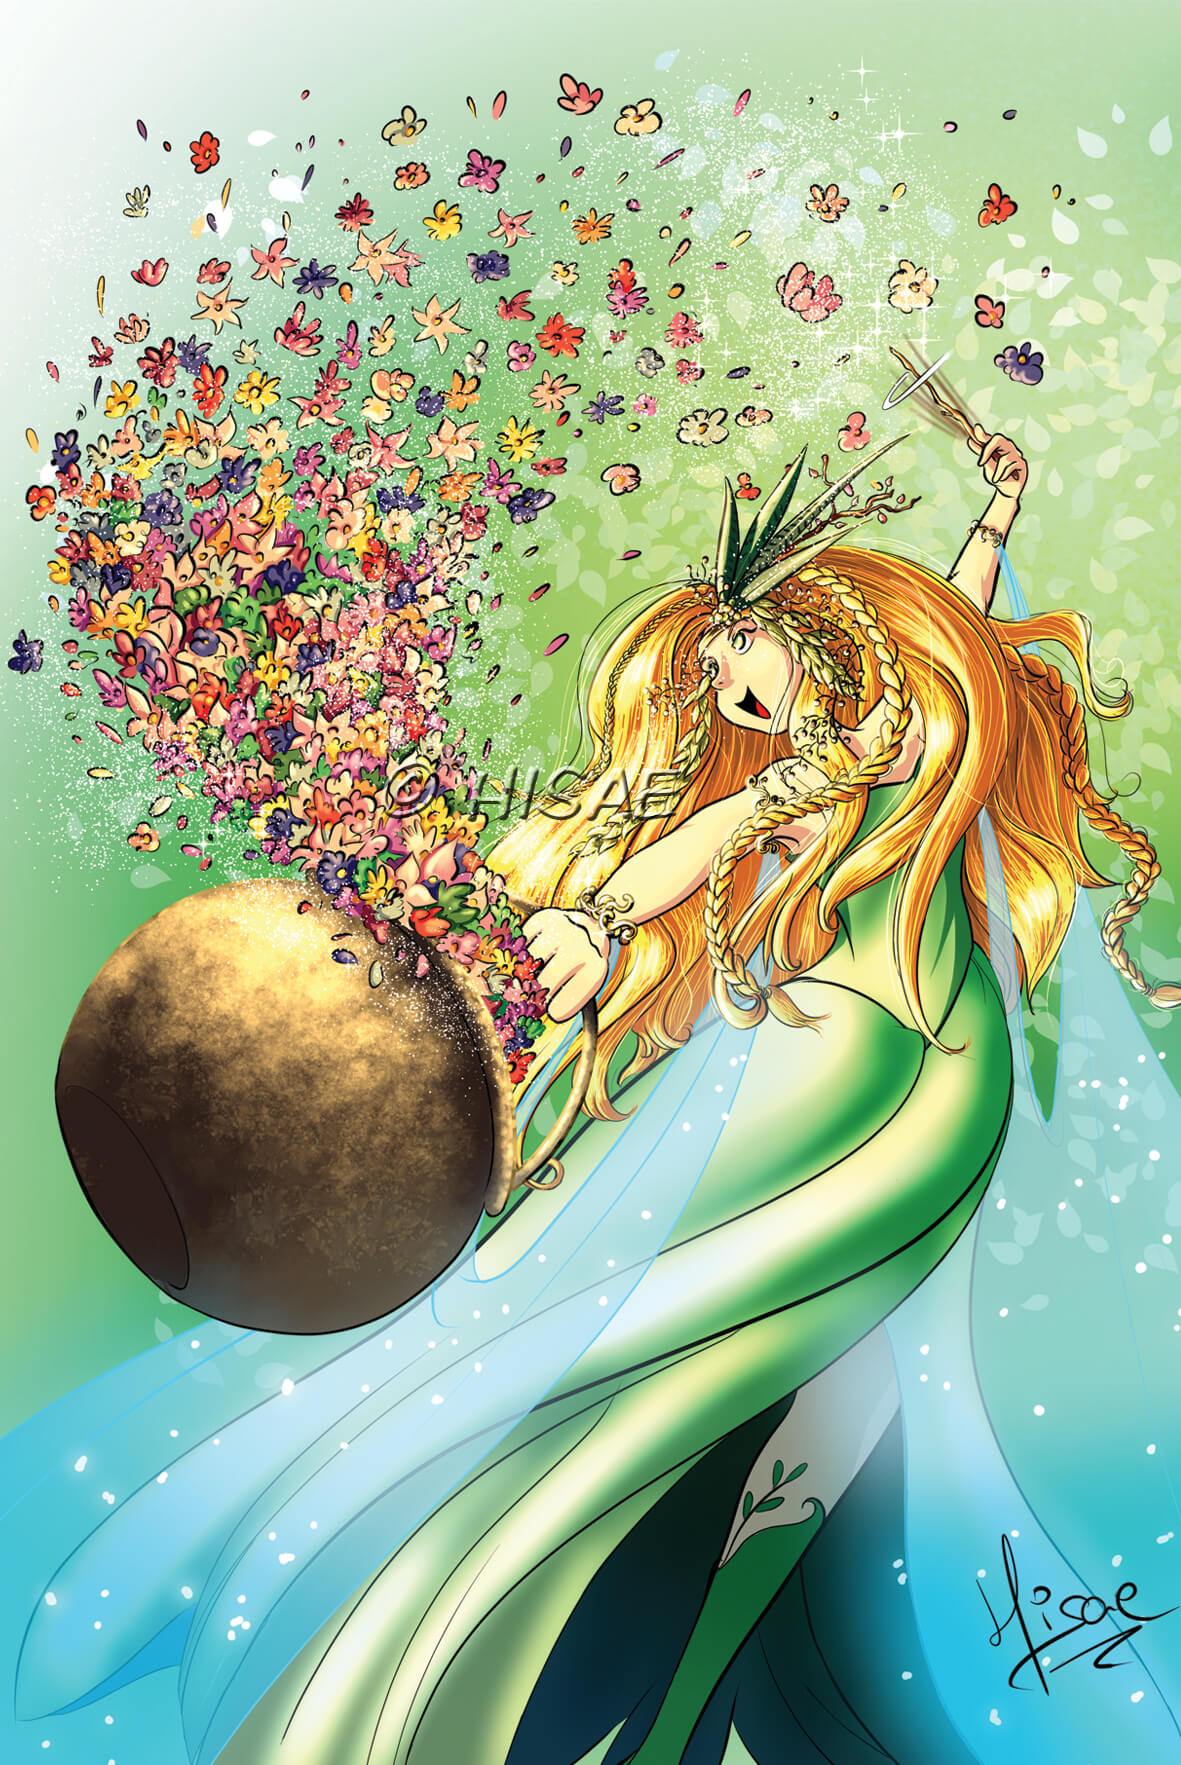 Dessin numérique en format carte postale représentant la sorcière du printemps qui fait apparaître des fleurs dans son chaudron @Hisae illustrations